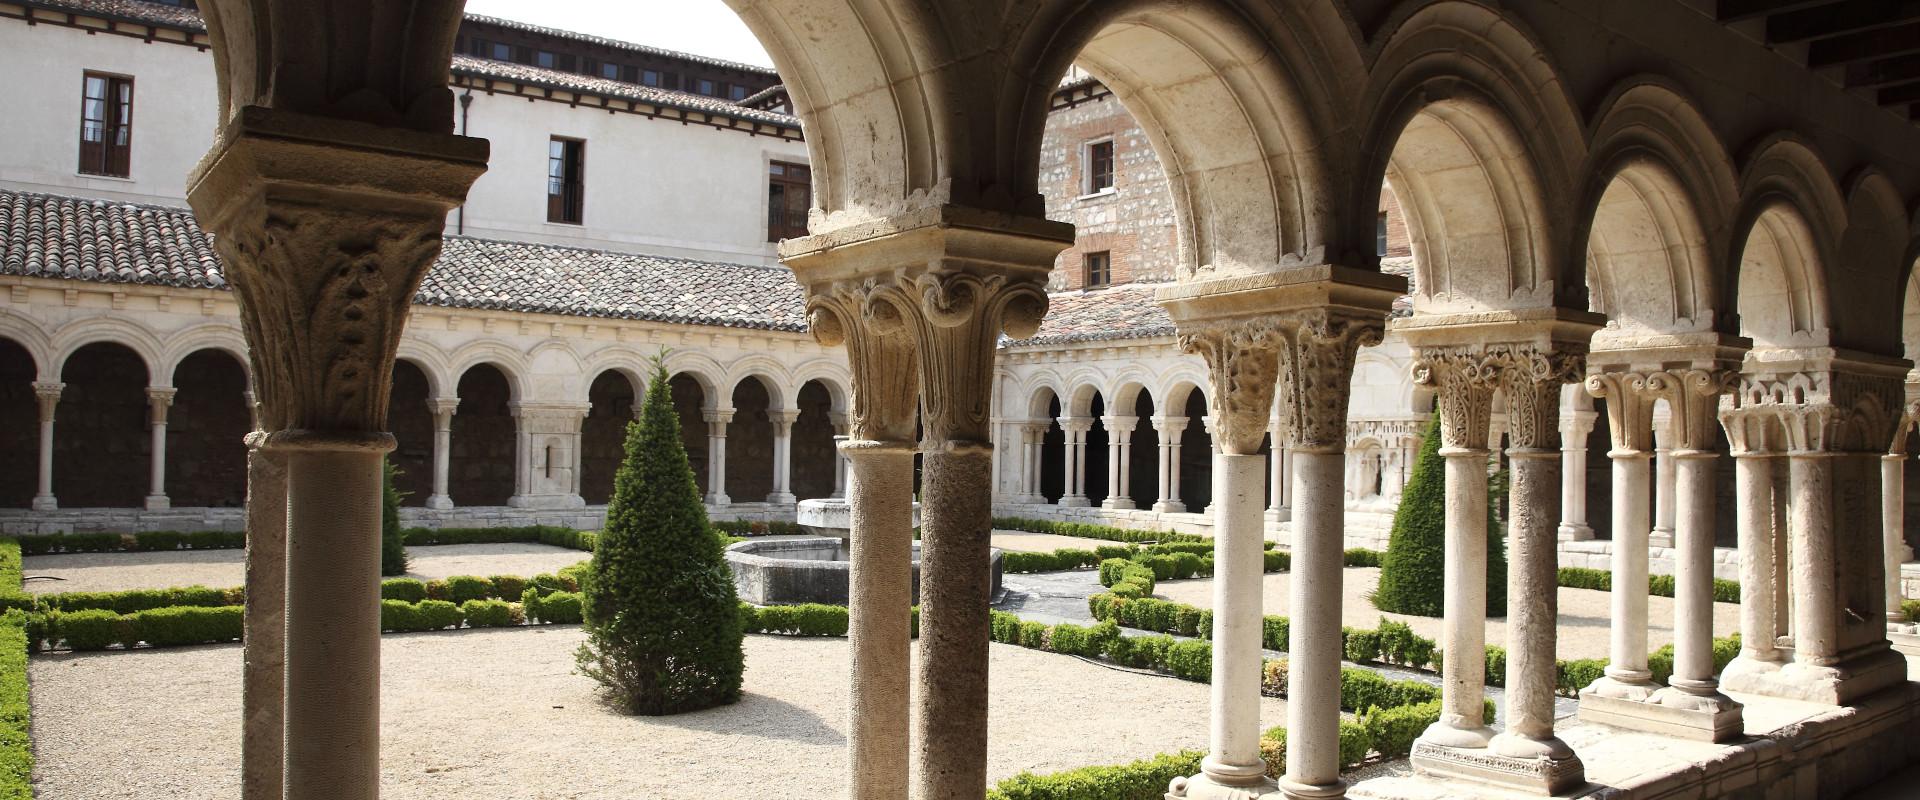 Las Huelgas, un monasterio único donde la poderosa abadesa solo respondía ante el Papa 4